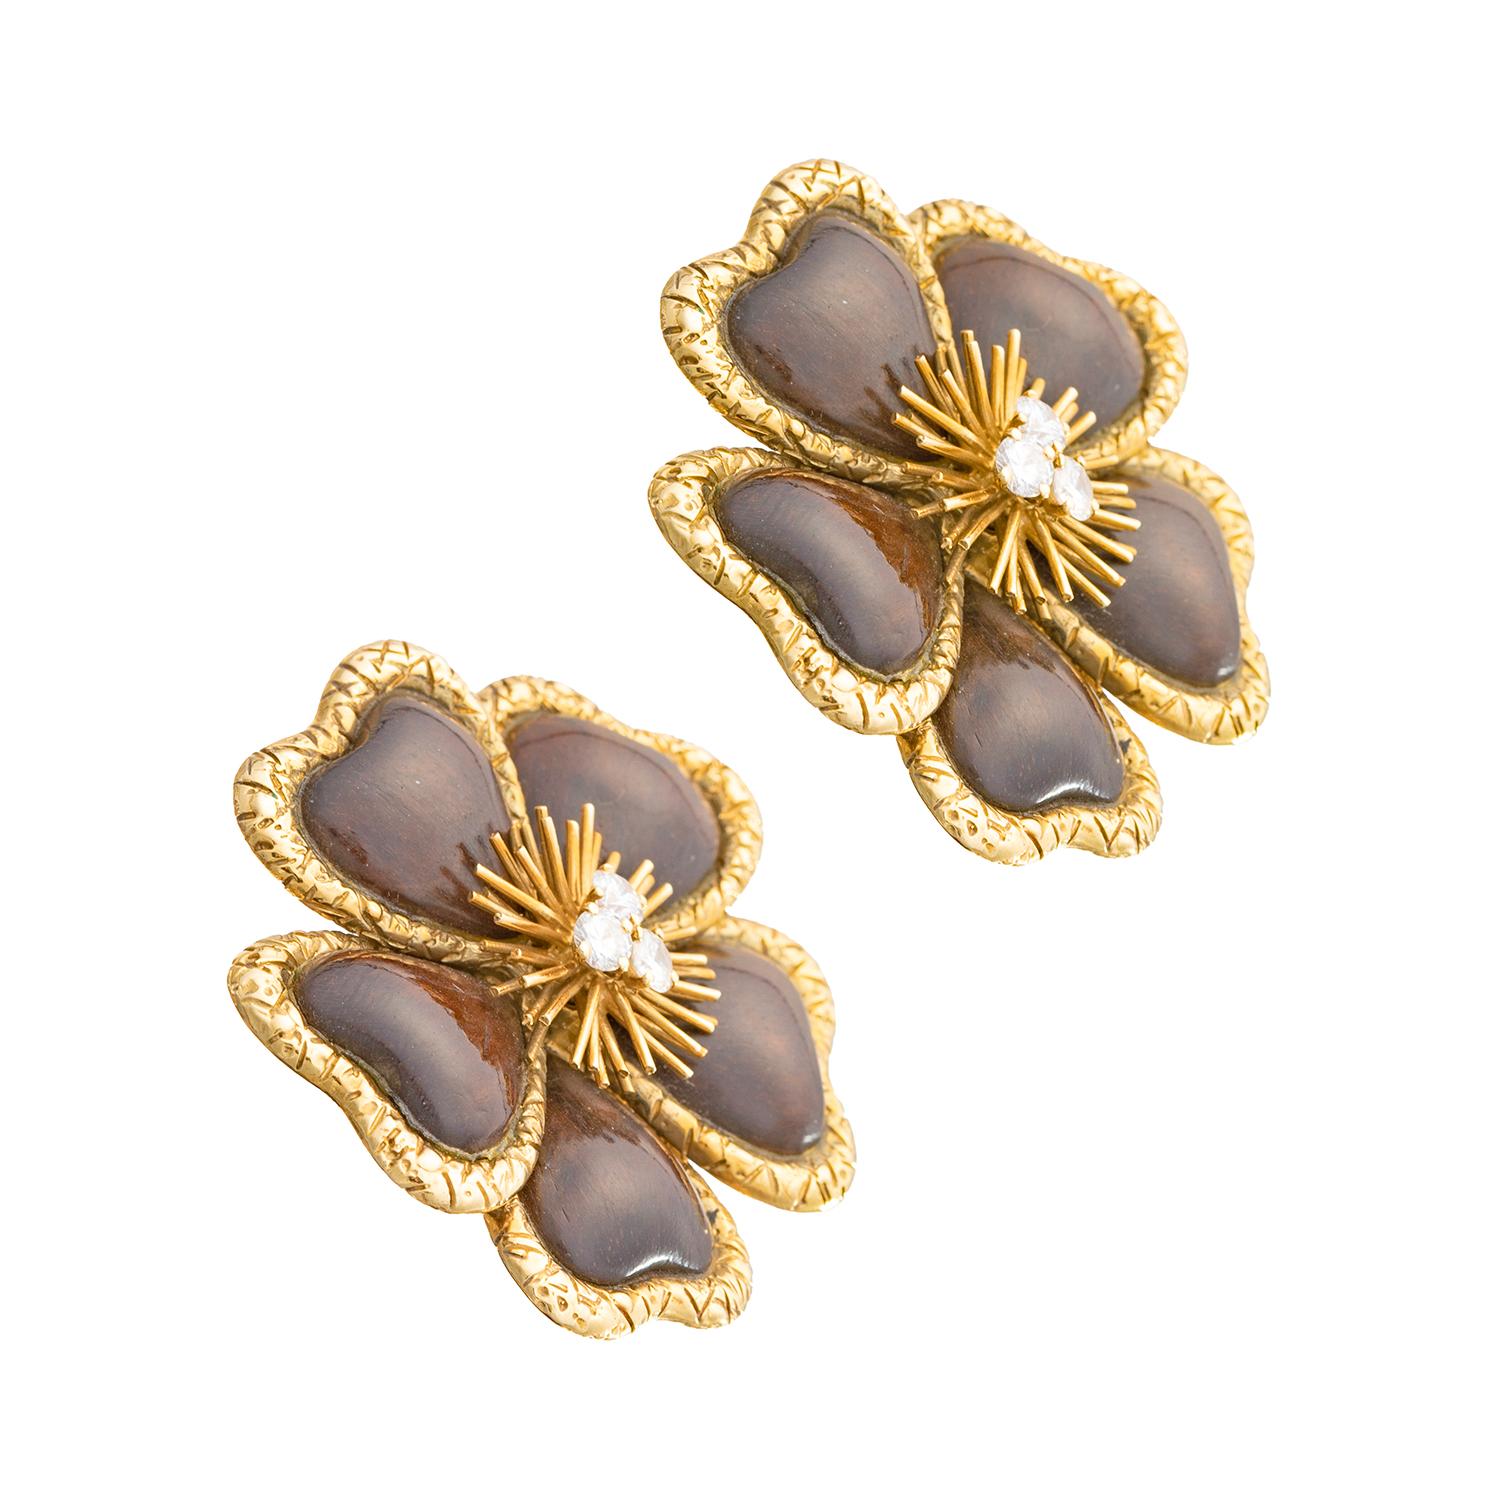 Van Cleef & Arpels große Clematisblüten-Clip-Ohrringe, jeder Blütenkopf zentriert drei runde Brillanten in einer goldenen Drahtspirale, umgeben von fünf geschnitzten Holzblütenblättern in gehämmerten 18-karätigen Gelbgoldrahmen.  Signiert 